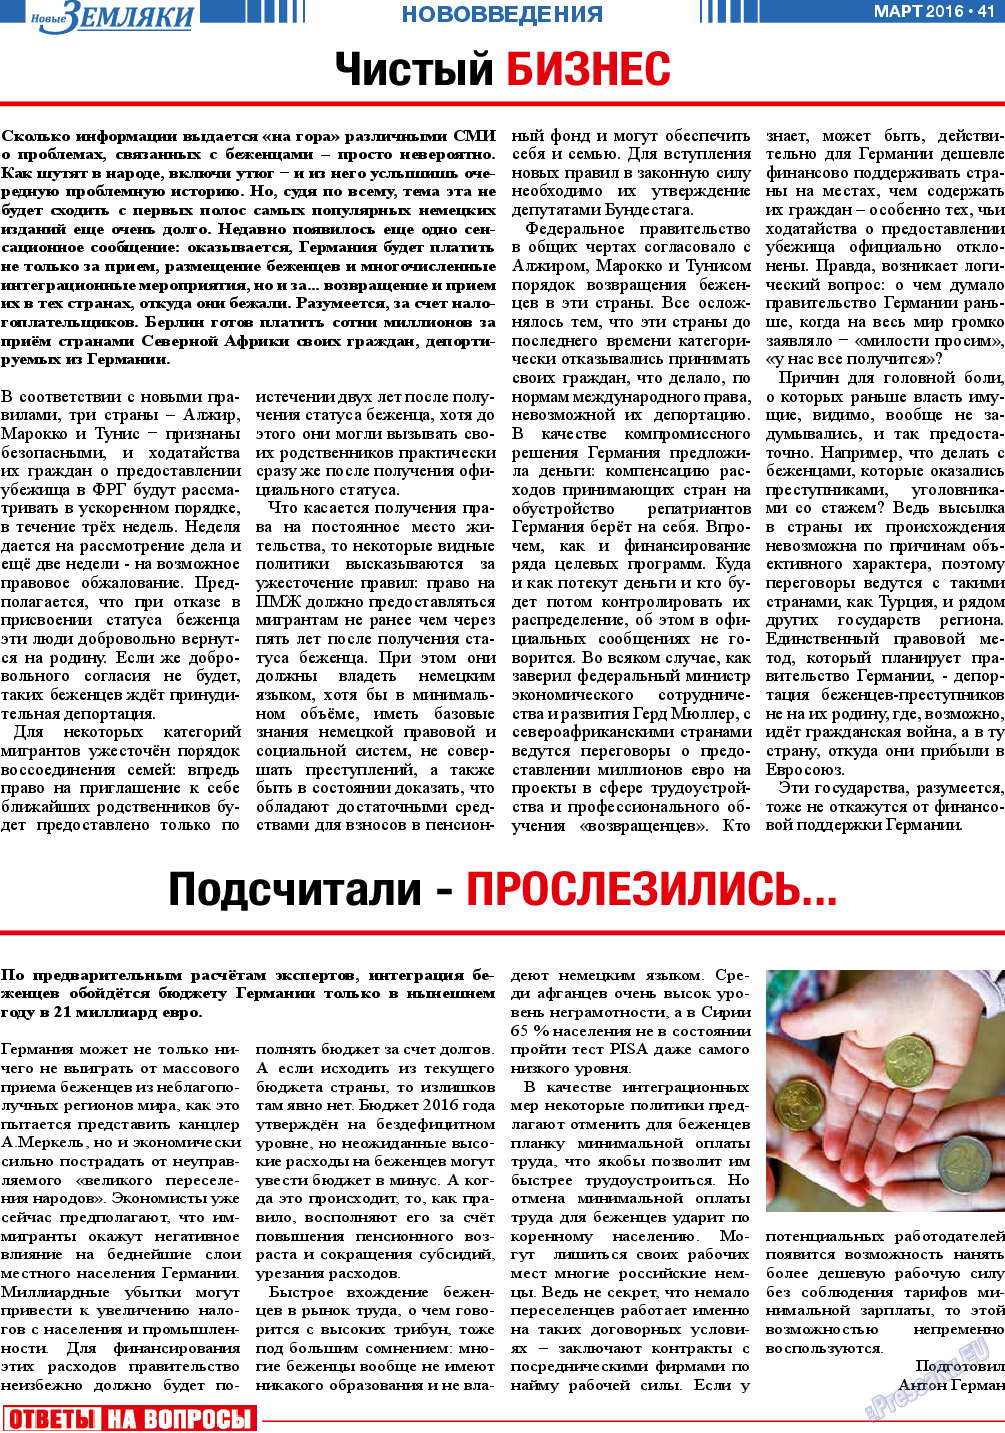 Новые Земляки, газета. 2016 №3 стр.41